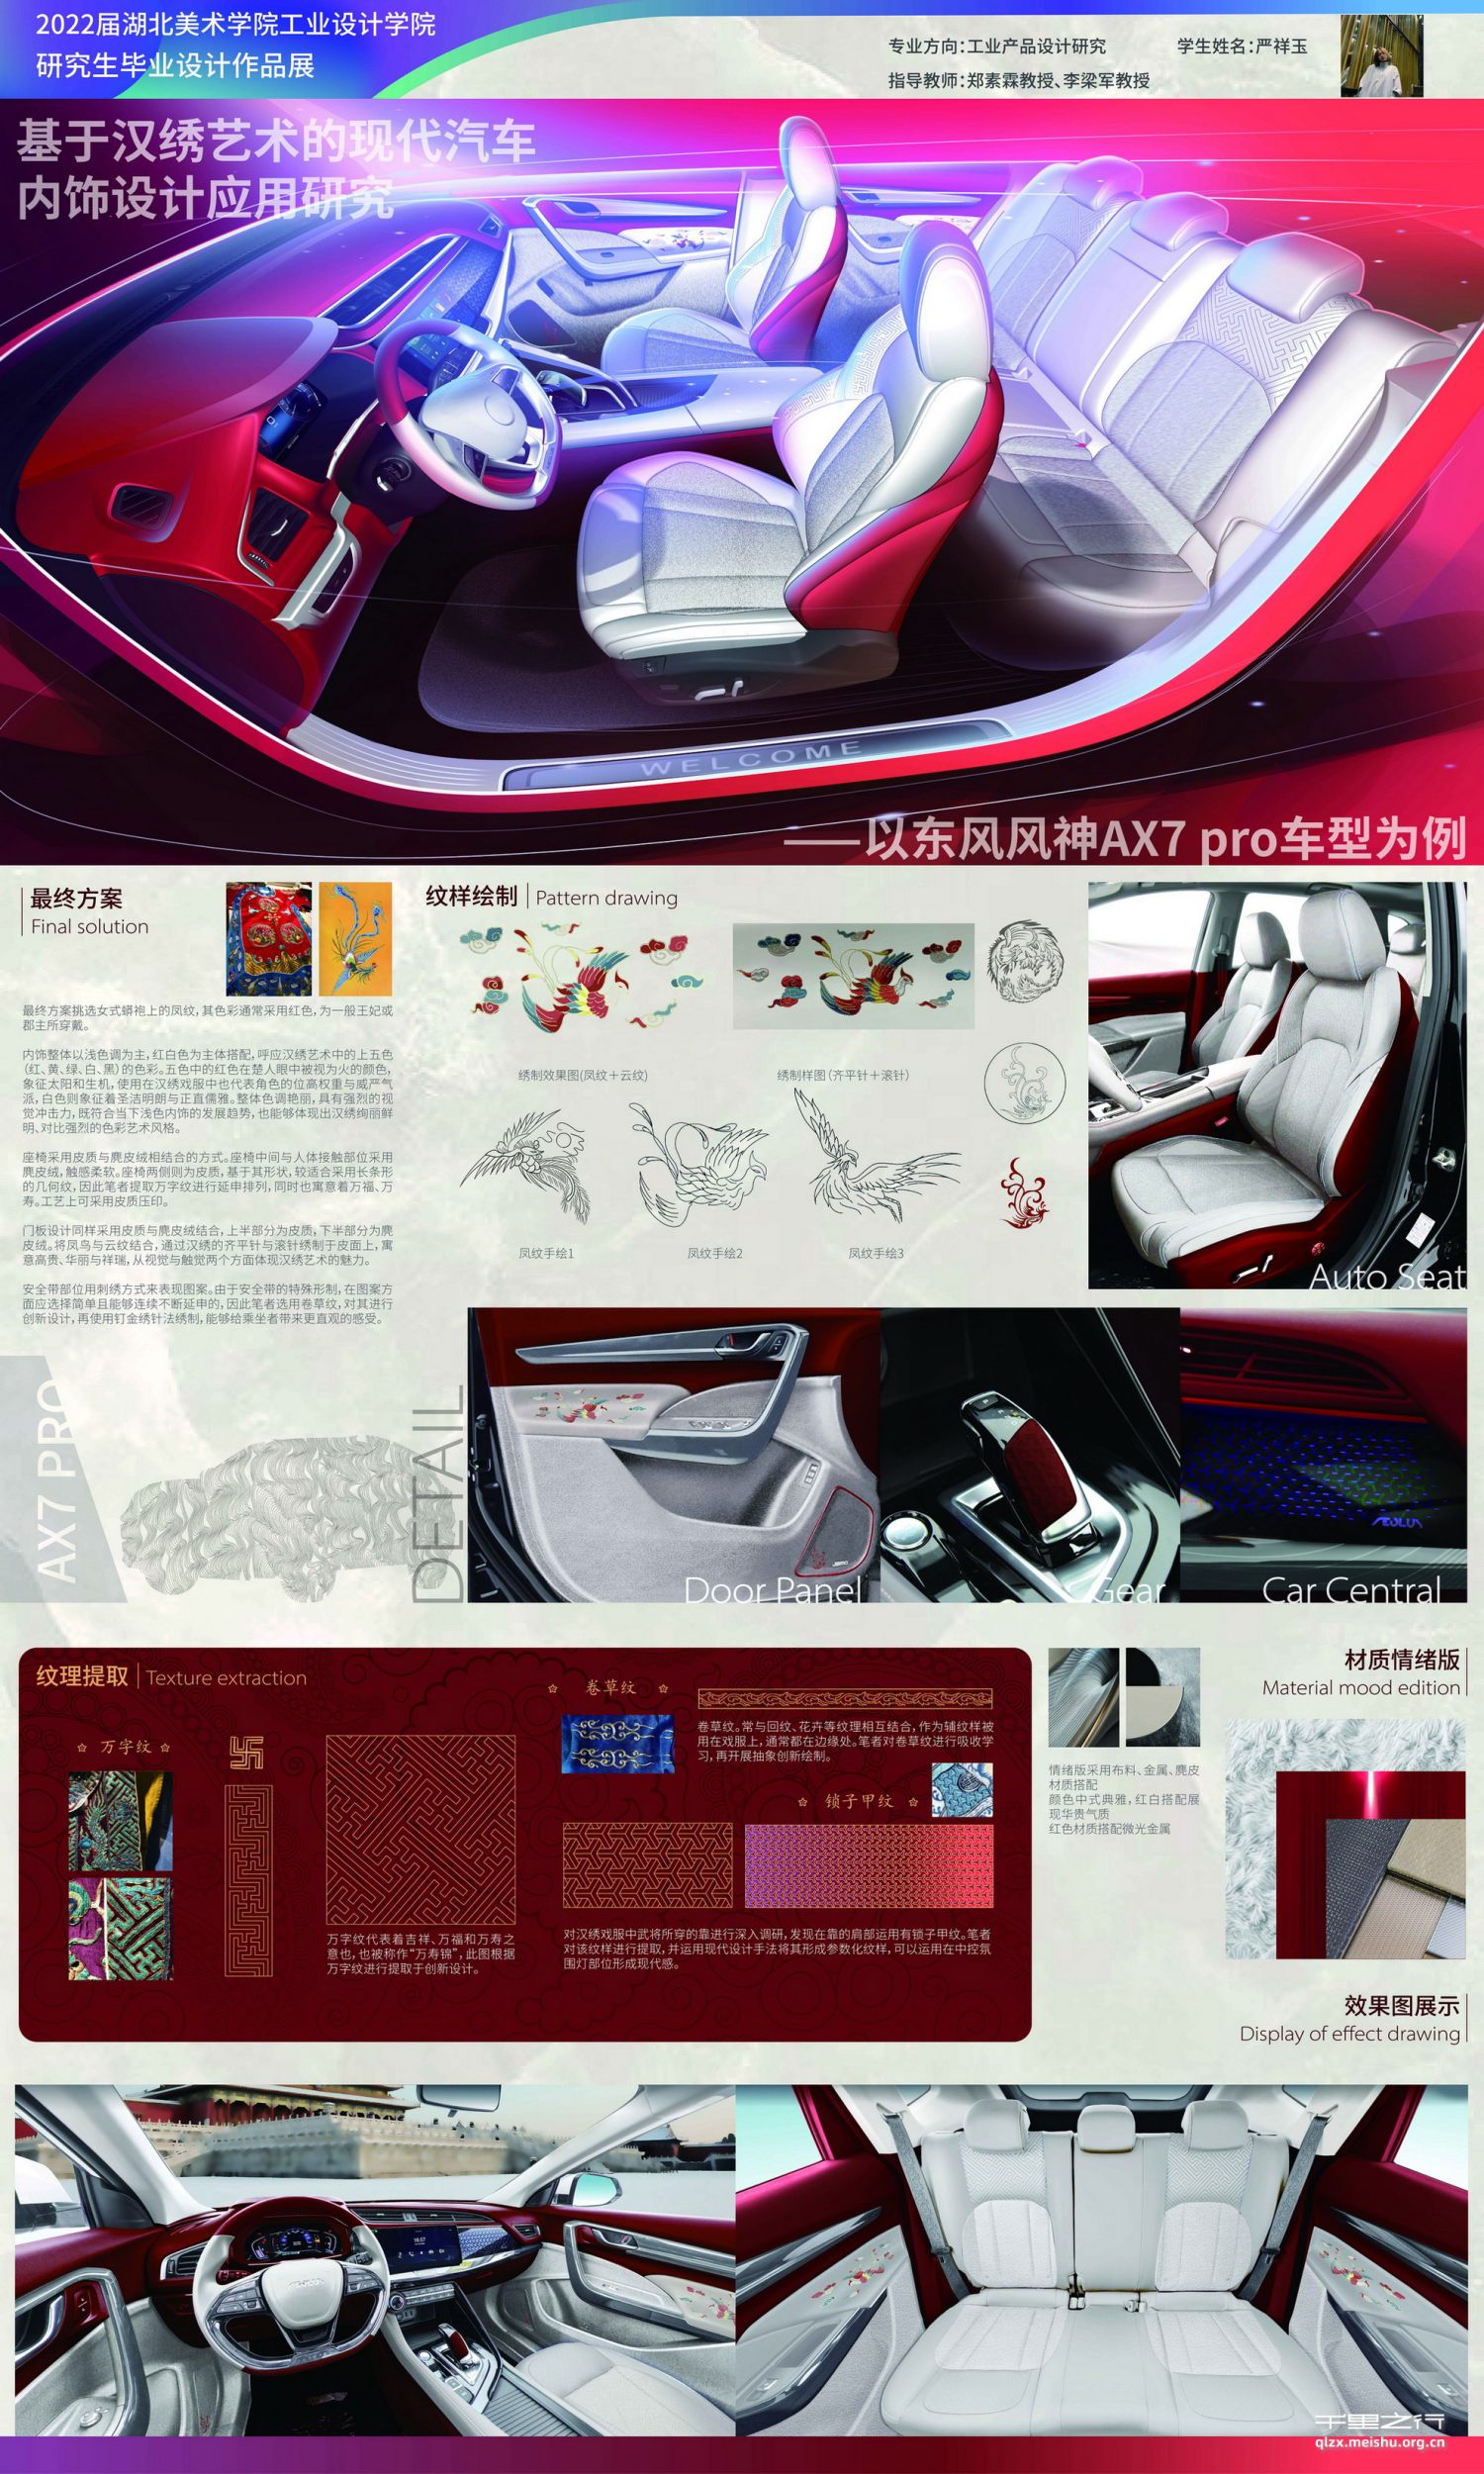 《基于汉绣艺术的现代汽车内饰设计应用研究——以东风风神AX7pro车型为例》